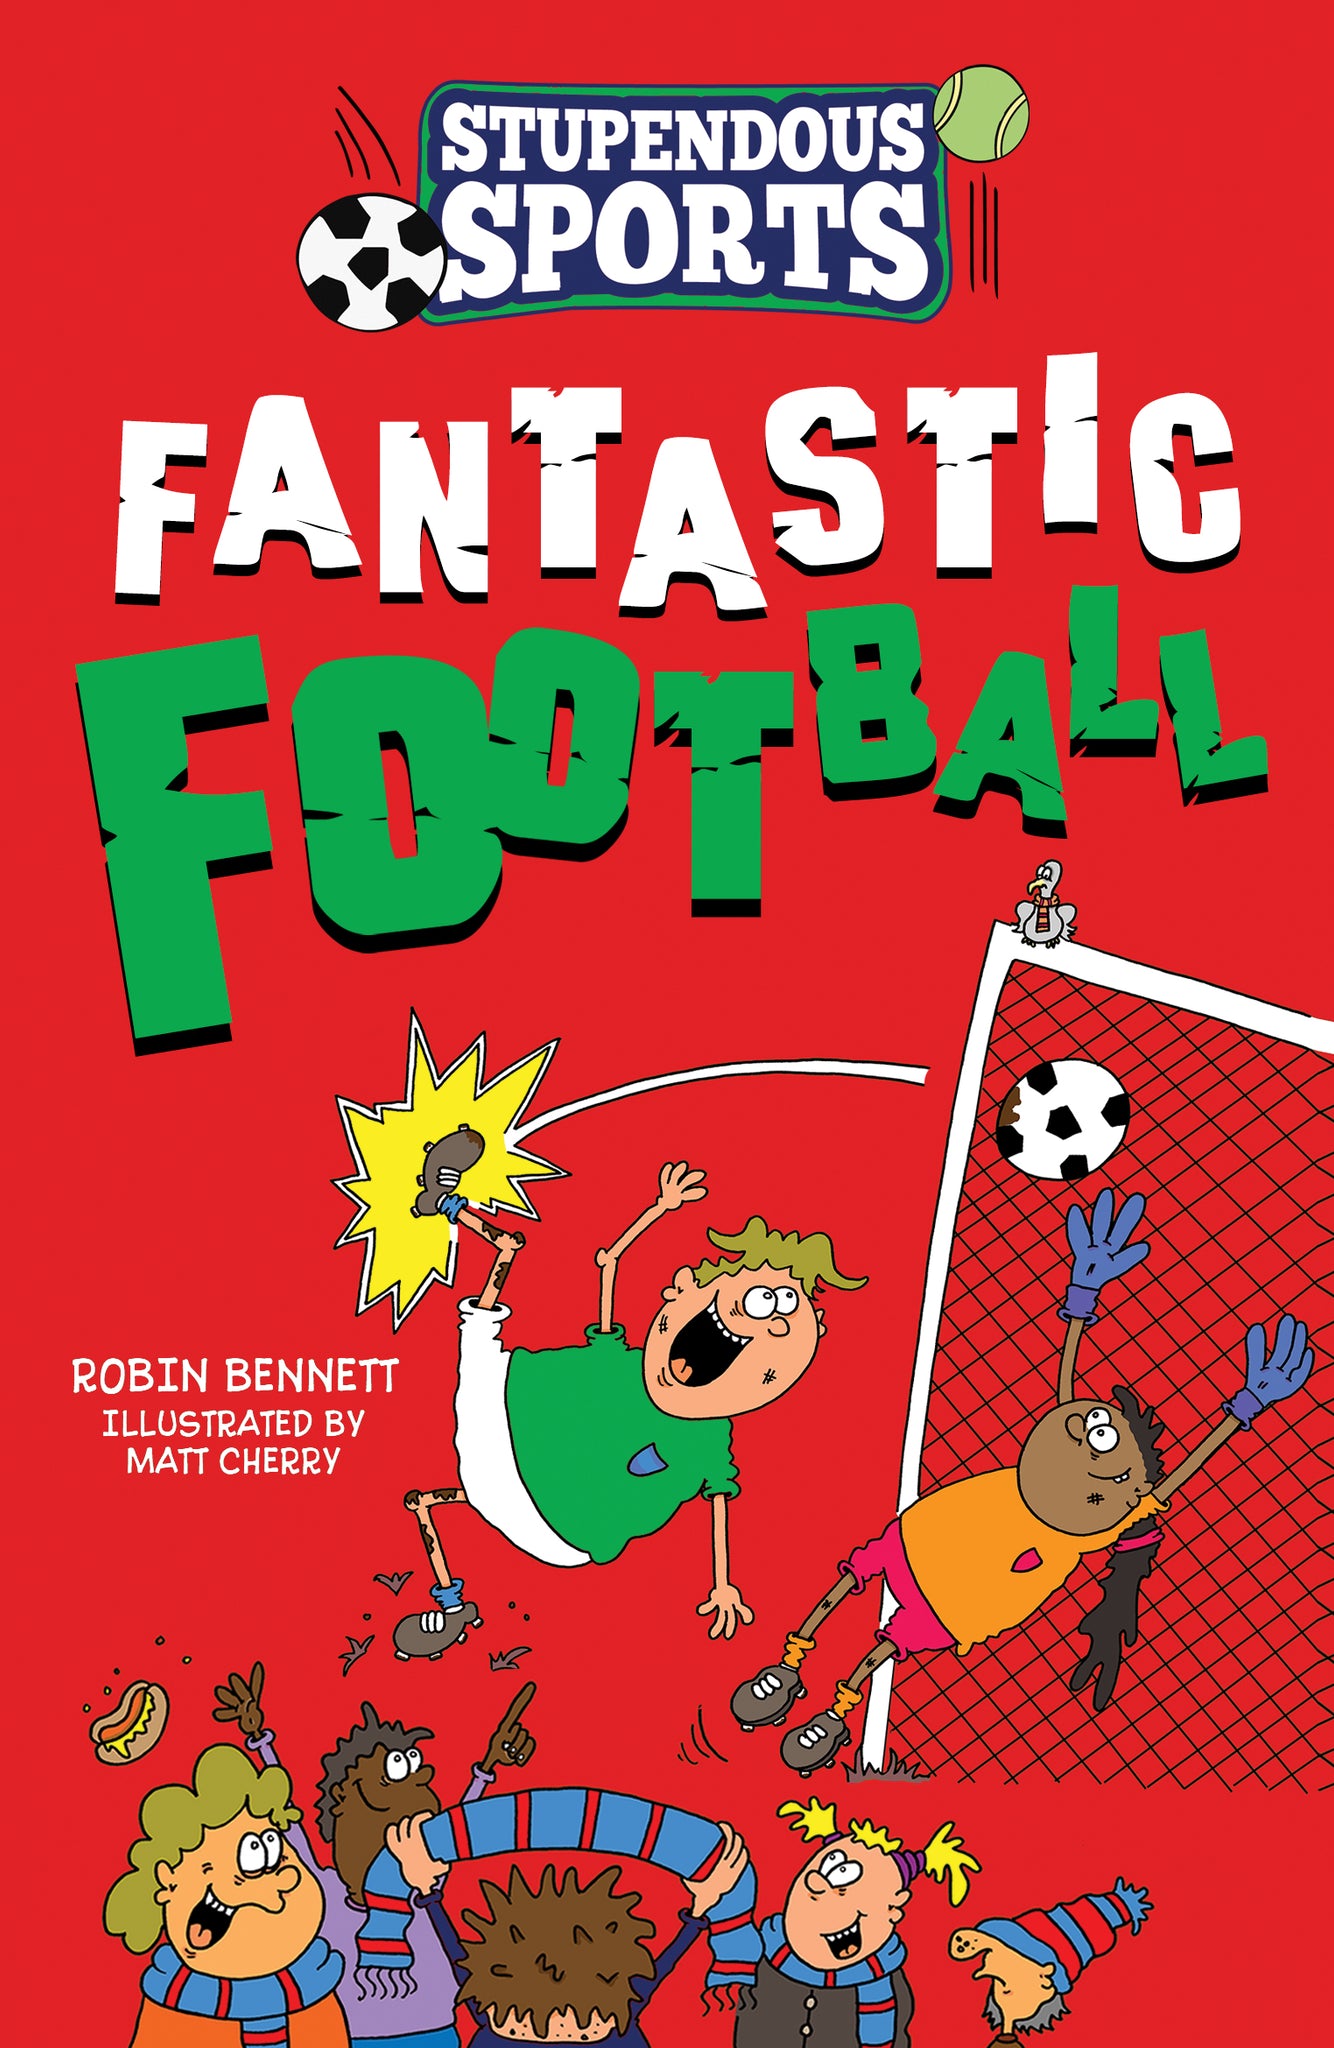 'Fantastic Football' gan Robin Bennett